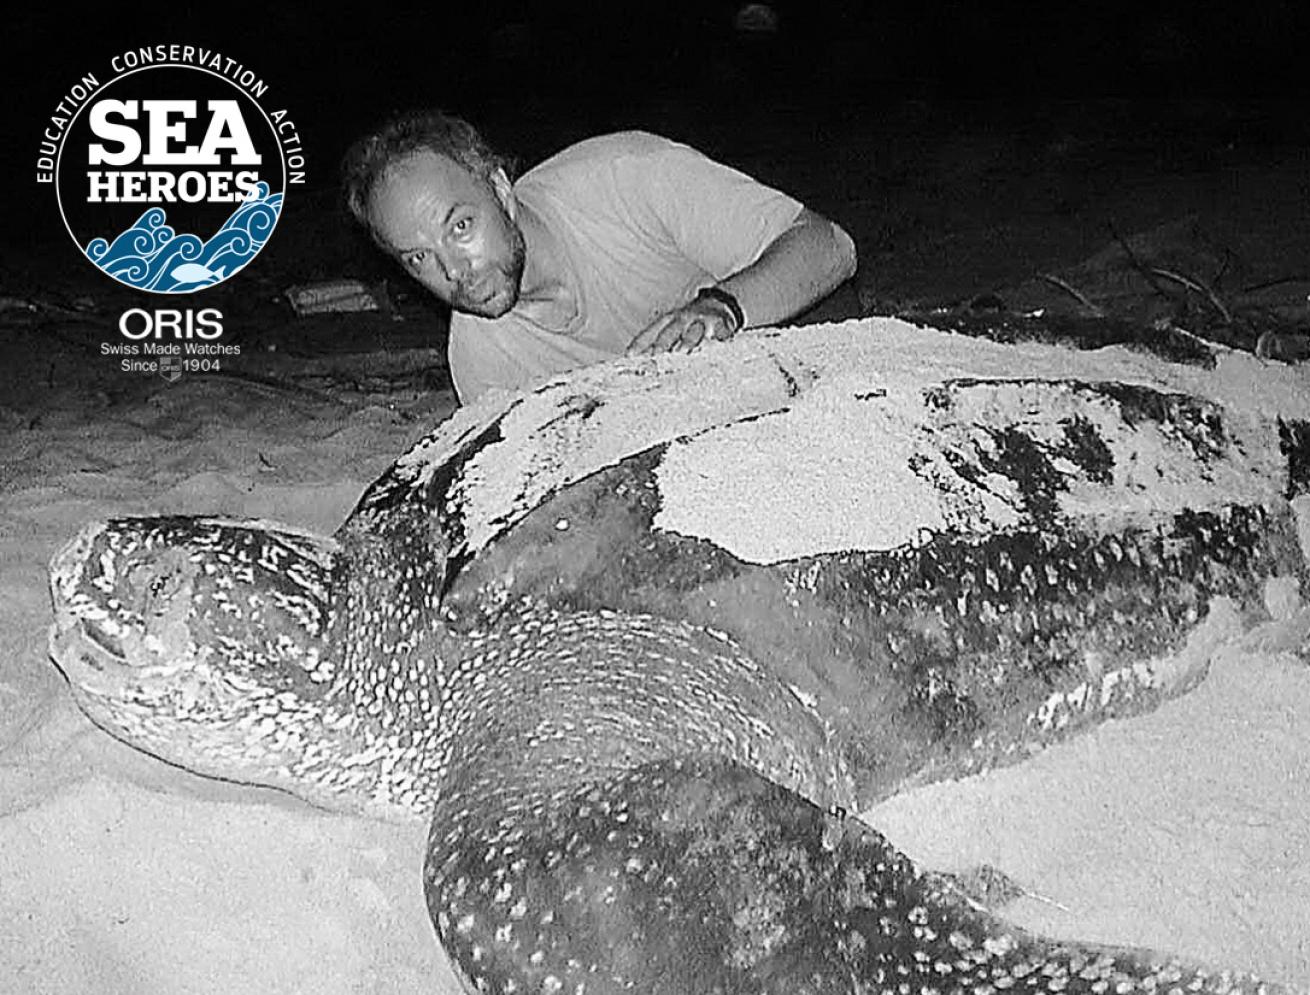 Carl Safina Living Oceans Program Turtle Black and White Sea Hero